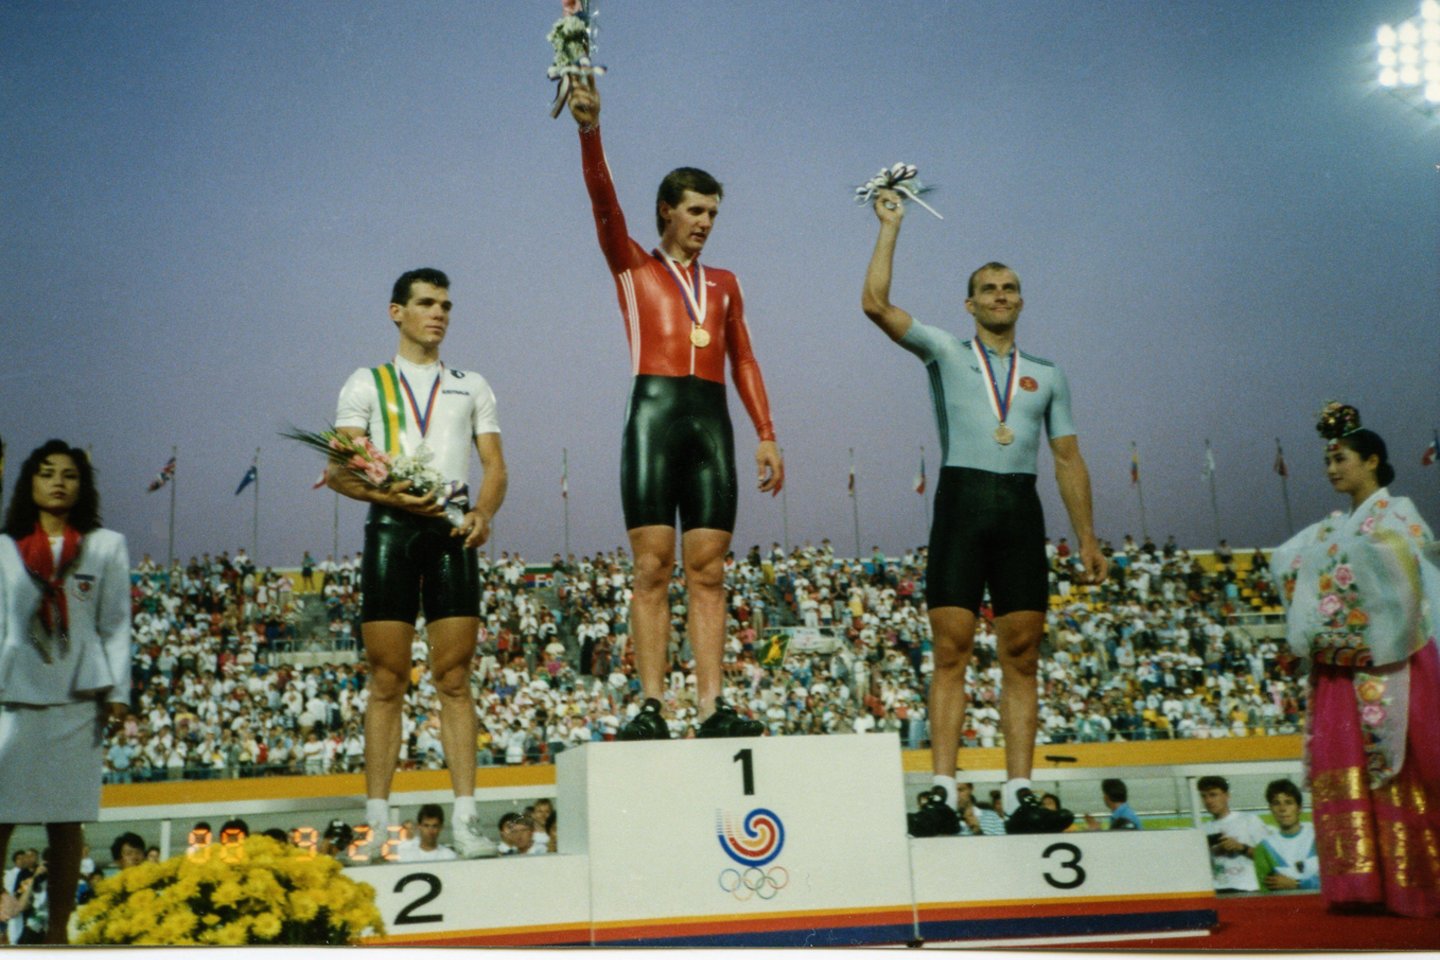  Gintautas Umaras yra vienintelis Lietuvoje dukart olimpinis čempionas.<br> Nuotr. iš asmeninio archyvo